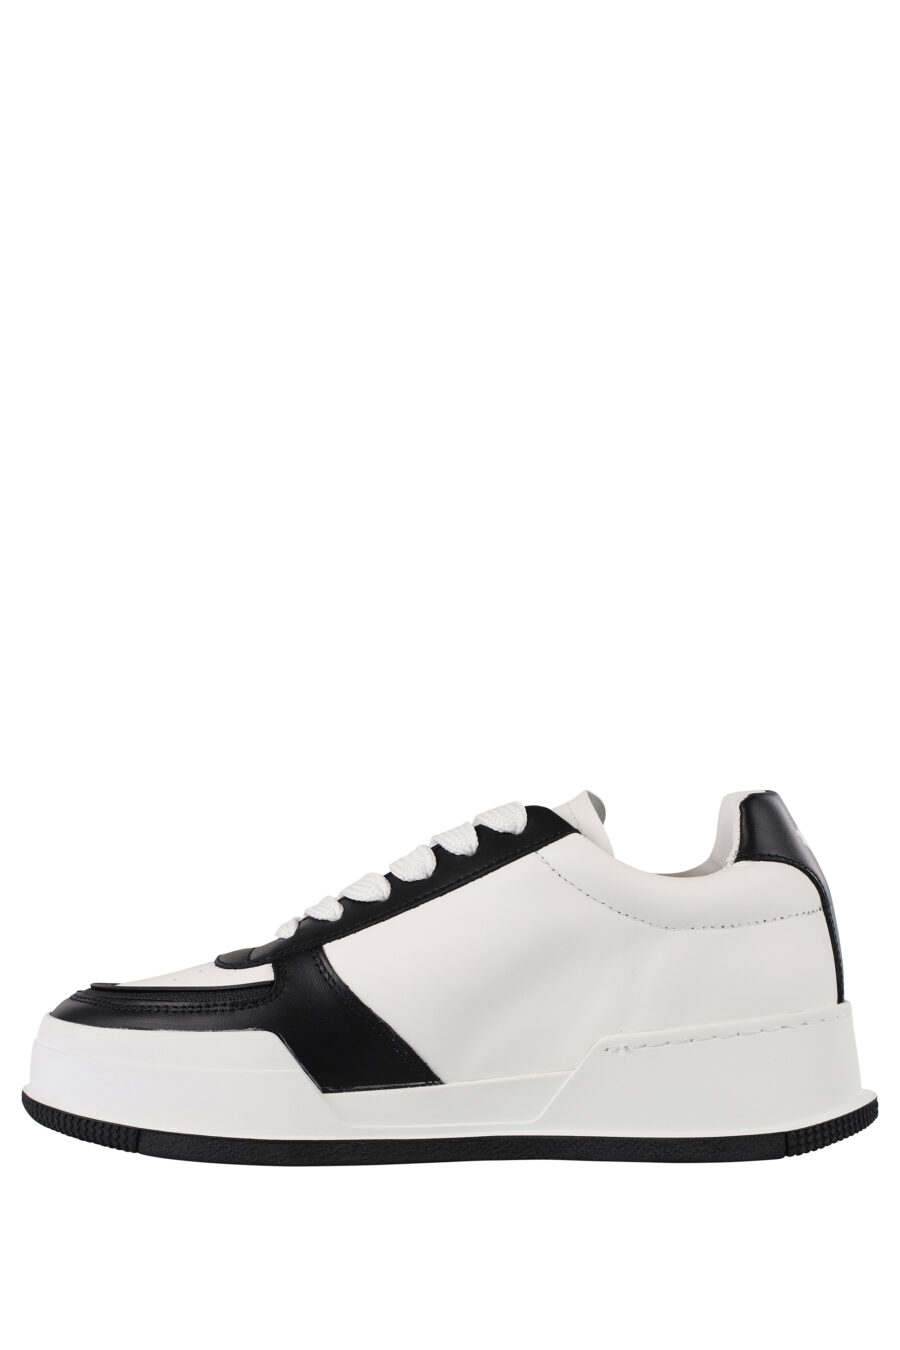 Zapatillas blancas con negro y hoja blanca - IMG 1214